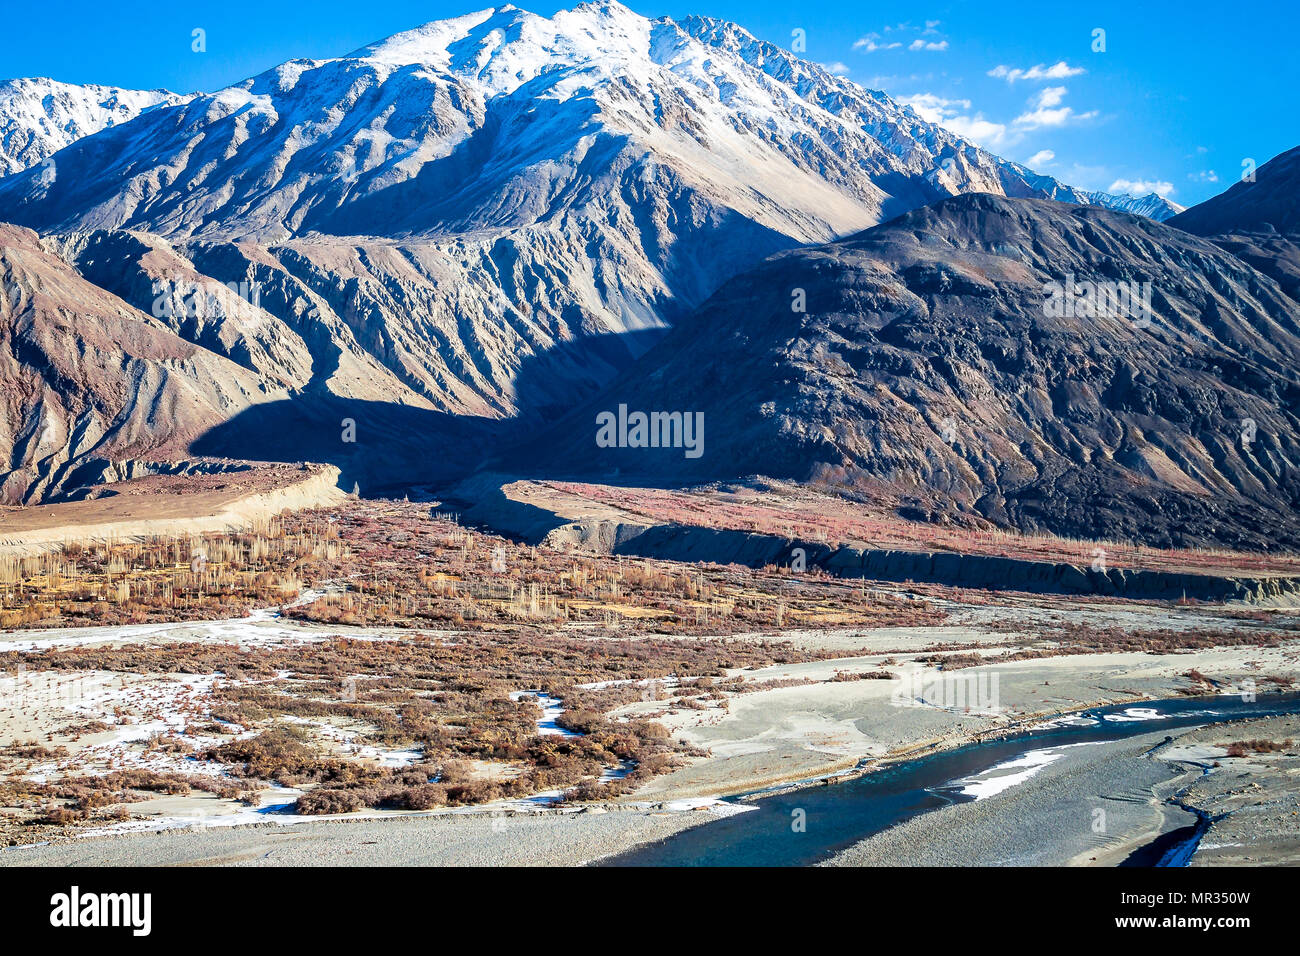 Alta montagna arida - Hanley fiume che scorre attraverso la roccia sharp montagne a ovest del Ladakh e gamma con appena un pizzico di neve a corona. Foto Stock